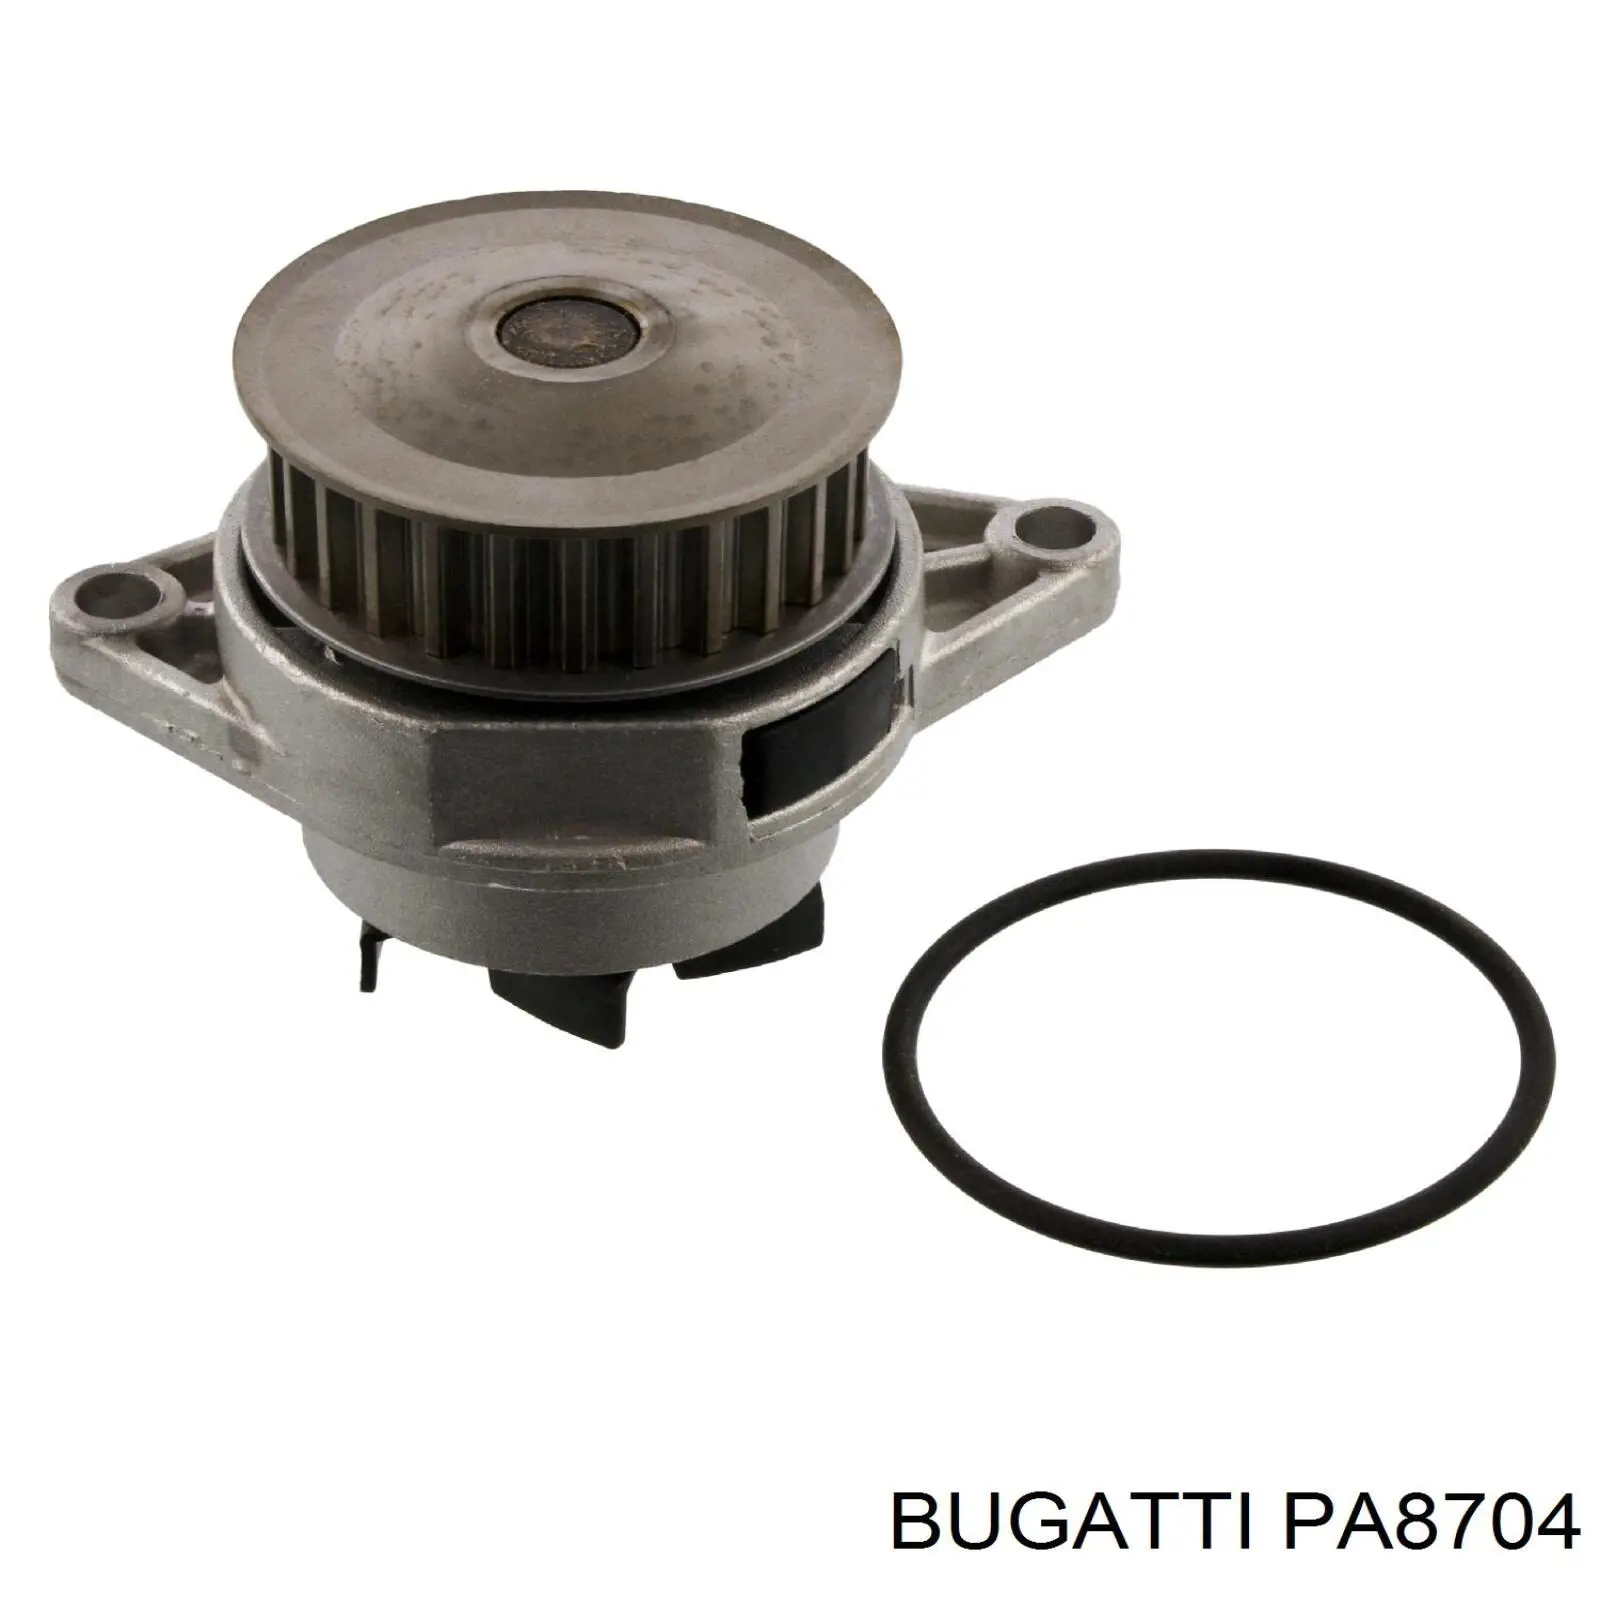 PA8704 Bugatti bomba de agua